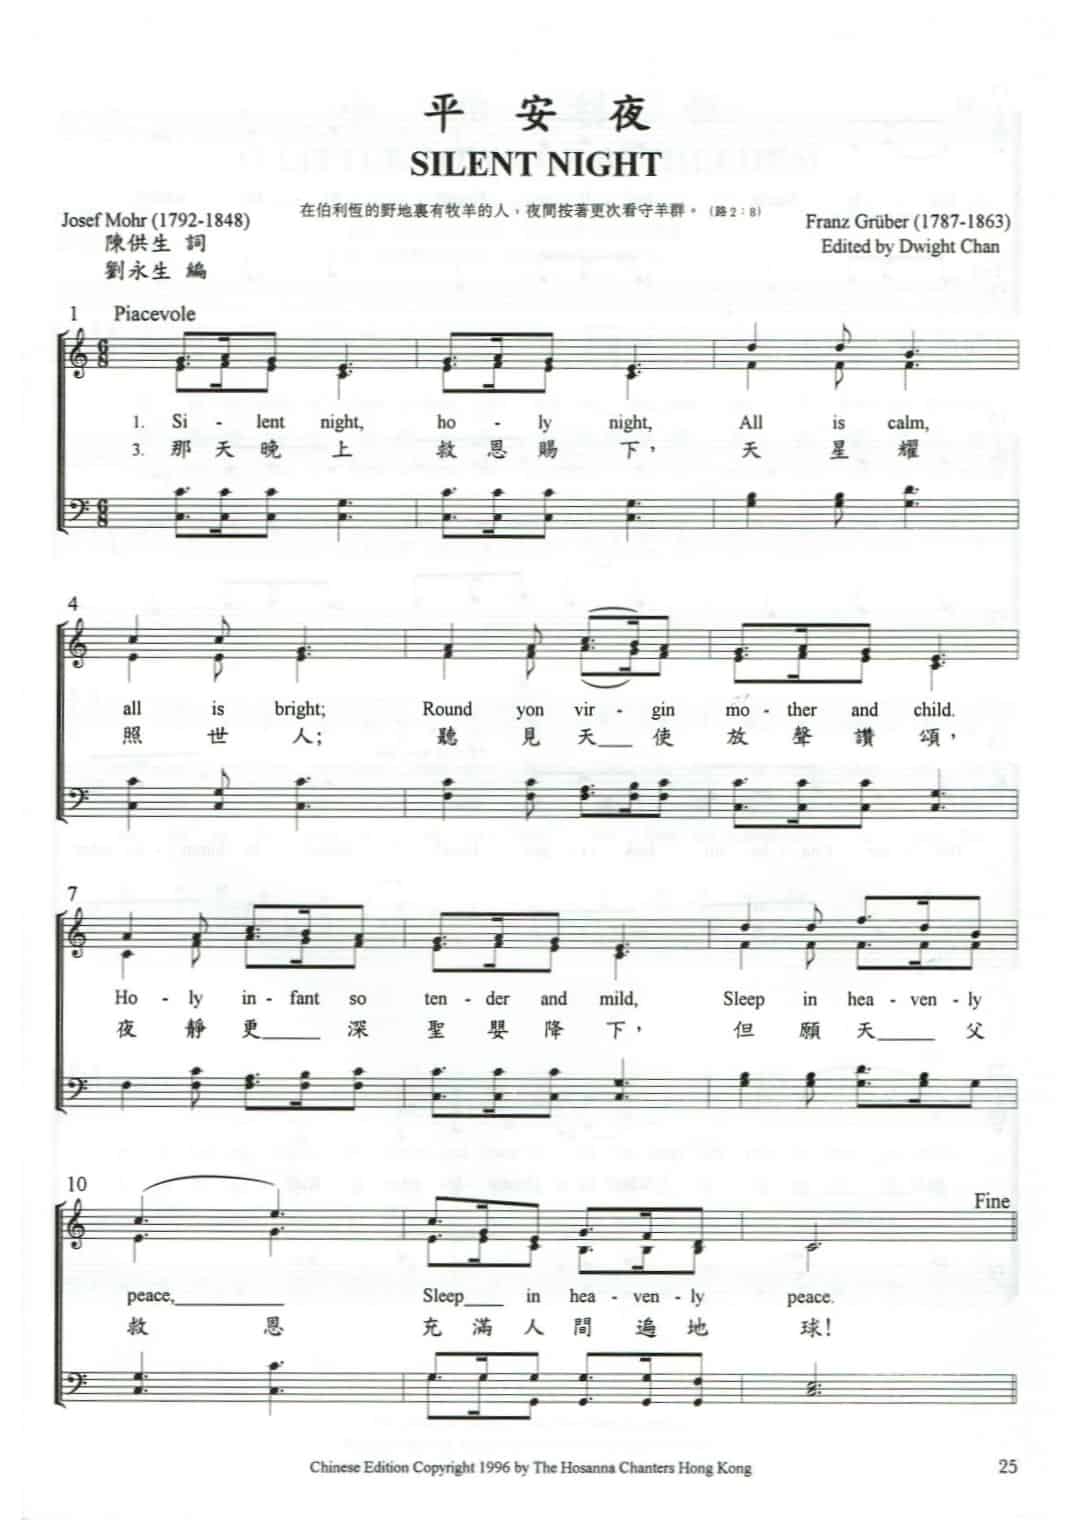 平安夜Silent Night | 粵語基督教合唱資源庫Cantonese Christian Choral Database